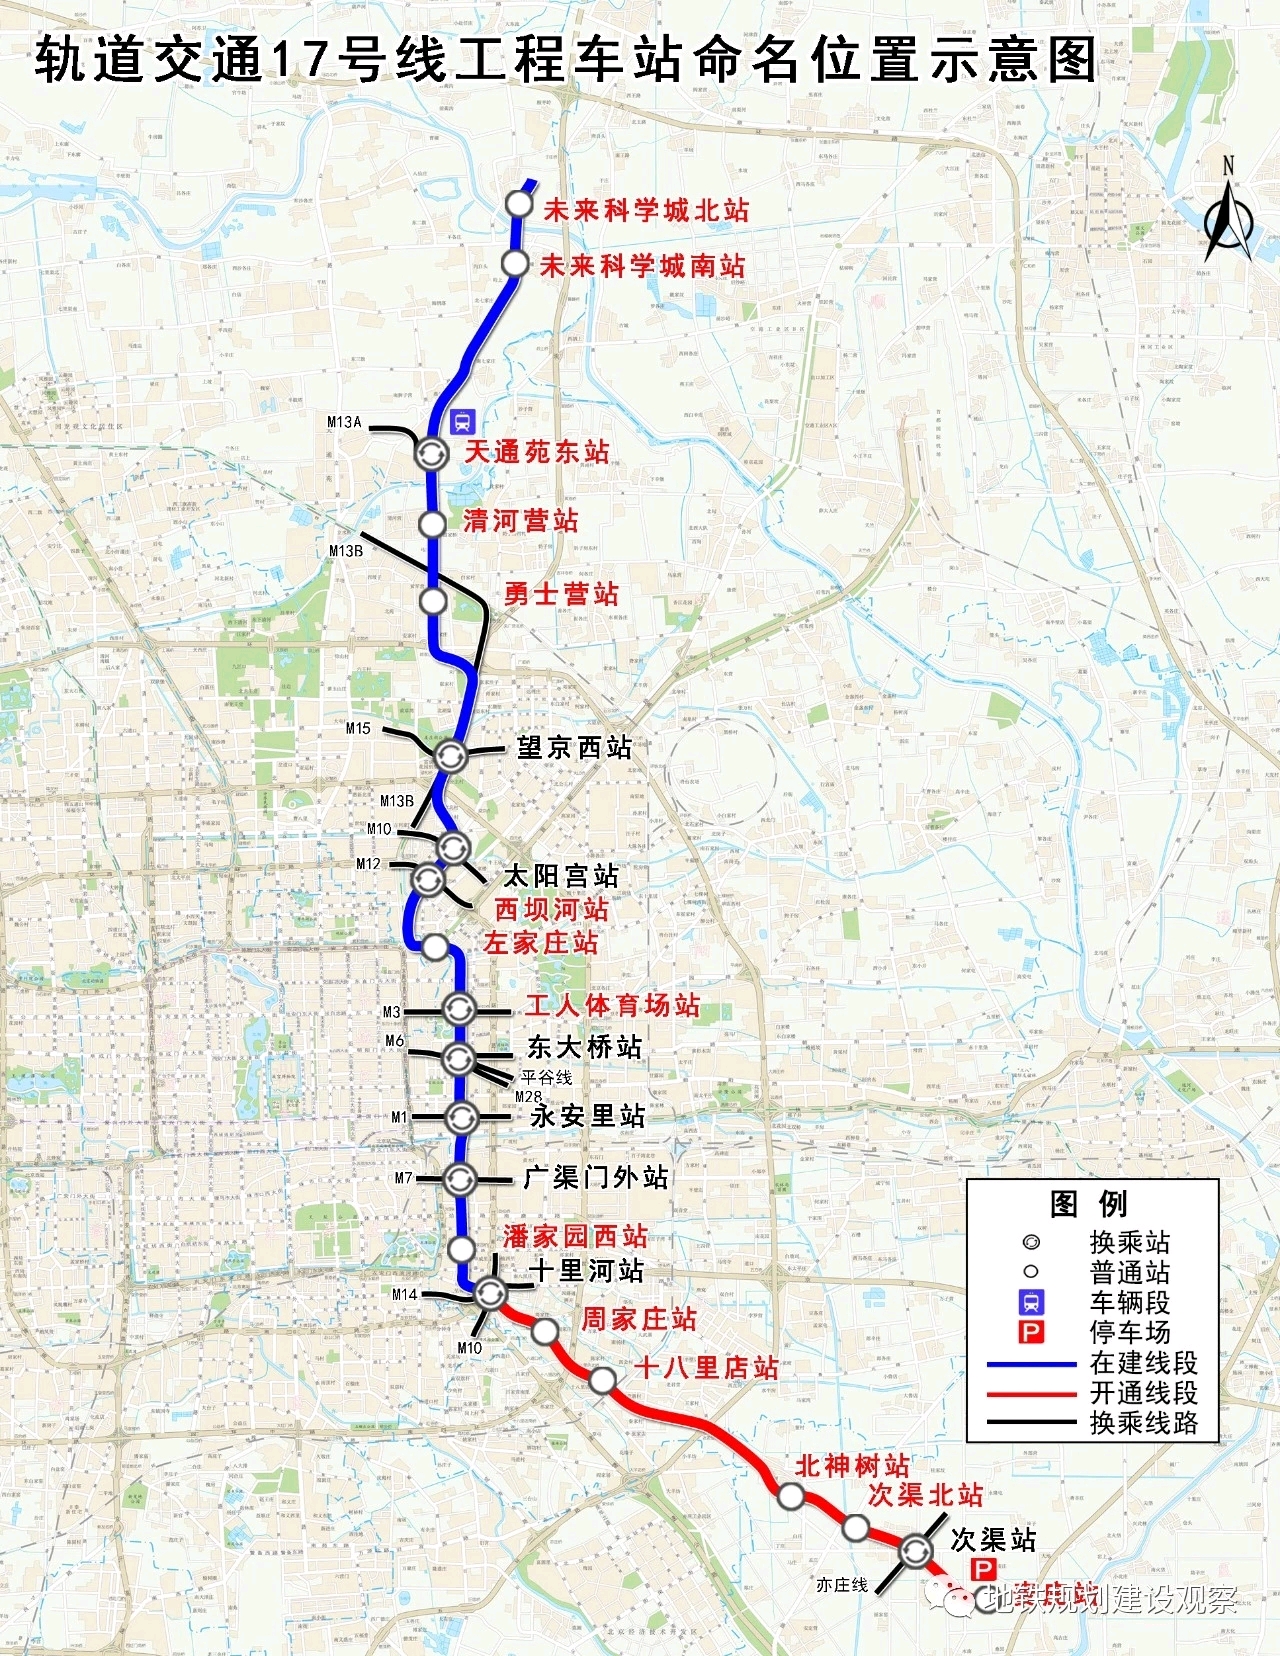 北京地铁科普向现有线路与规划线路简单介绍202211更新